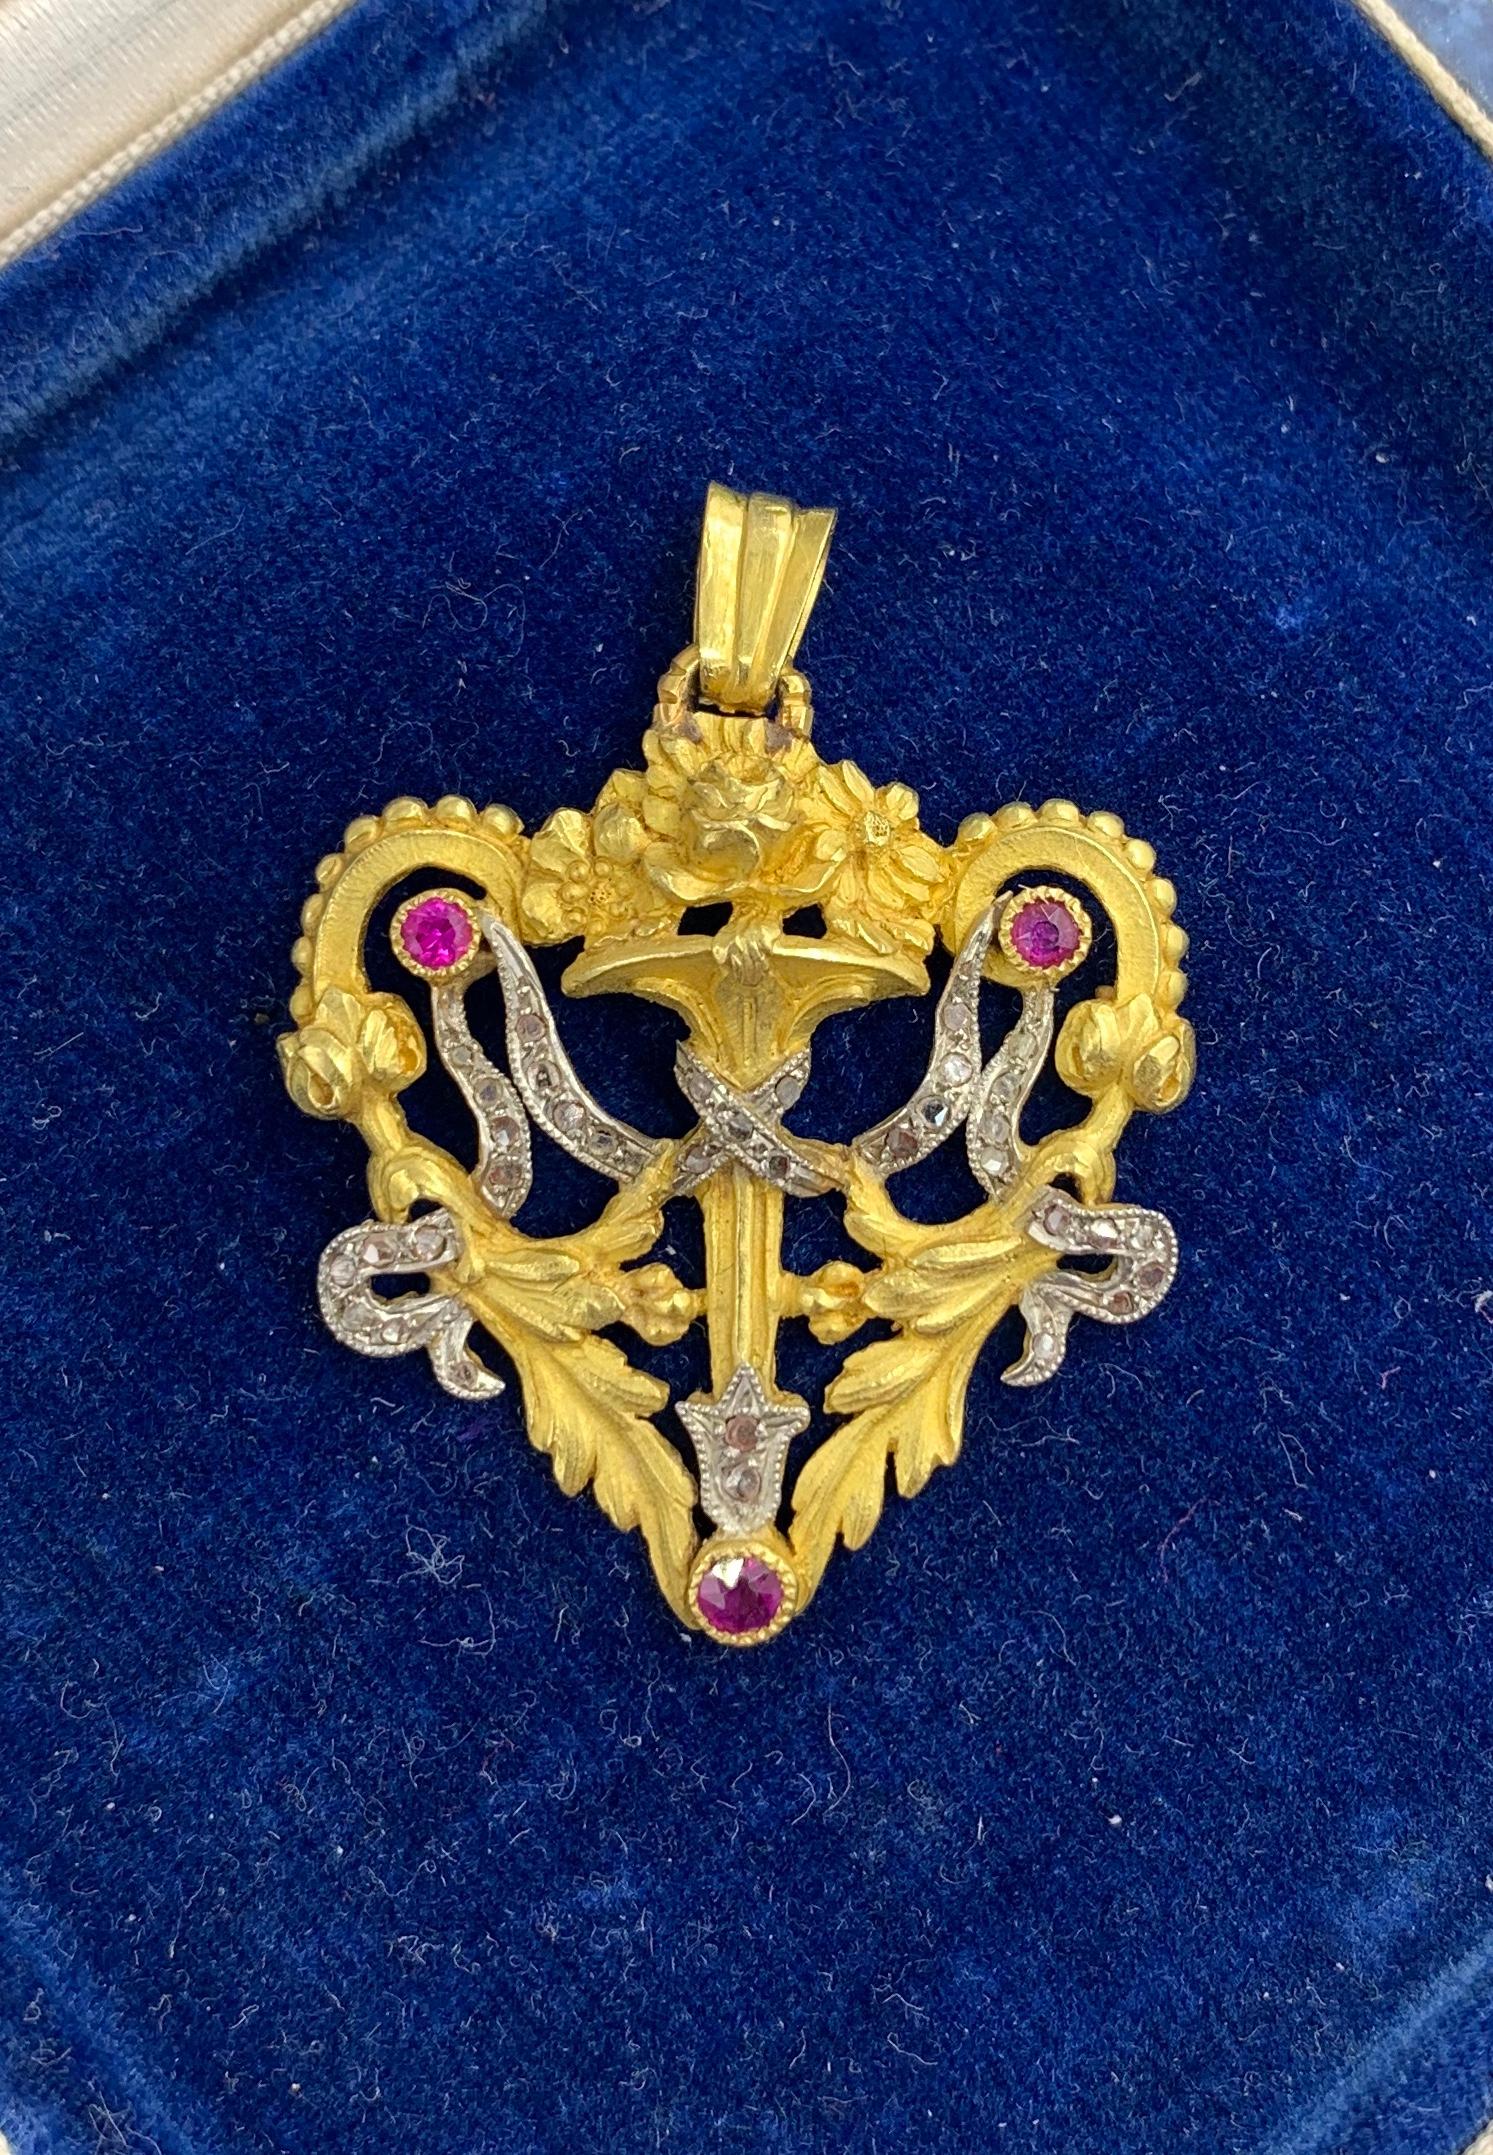 Dies ist eine atemberaubende und seltene antike Herz-Motiv Französisch Belle Epoque Rose Cut Diamant und Rubin 18 Karat Gold Anhänger Halskette.   Der wunderschöne herzförmige Anhänger weist alle Elemente der französischen Napoleon-III-Juwelen auf,